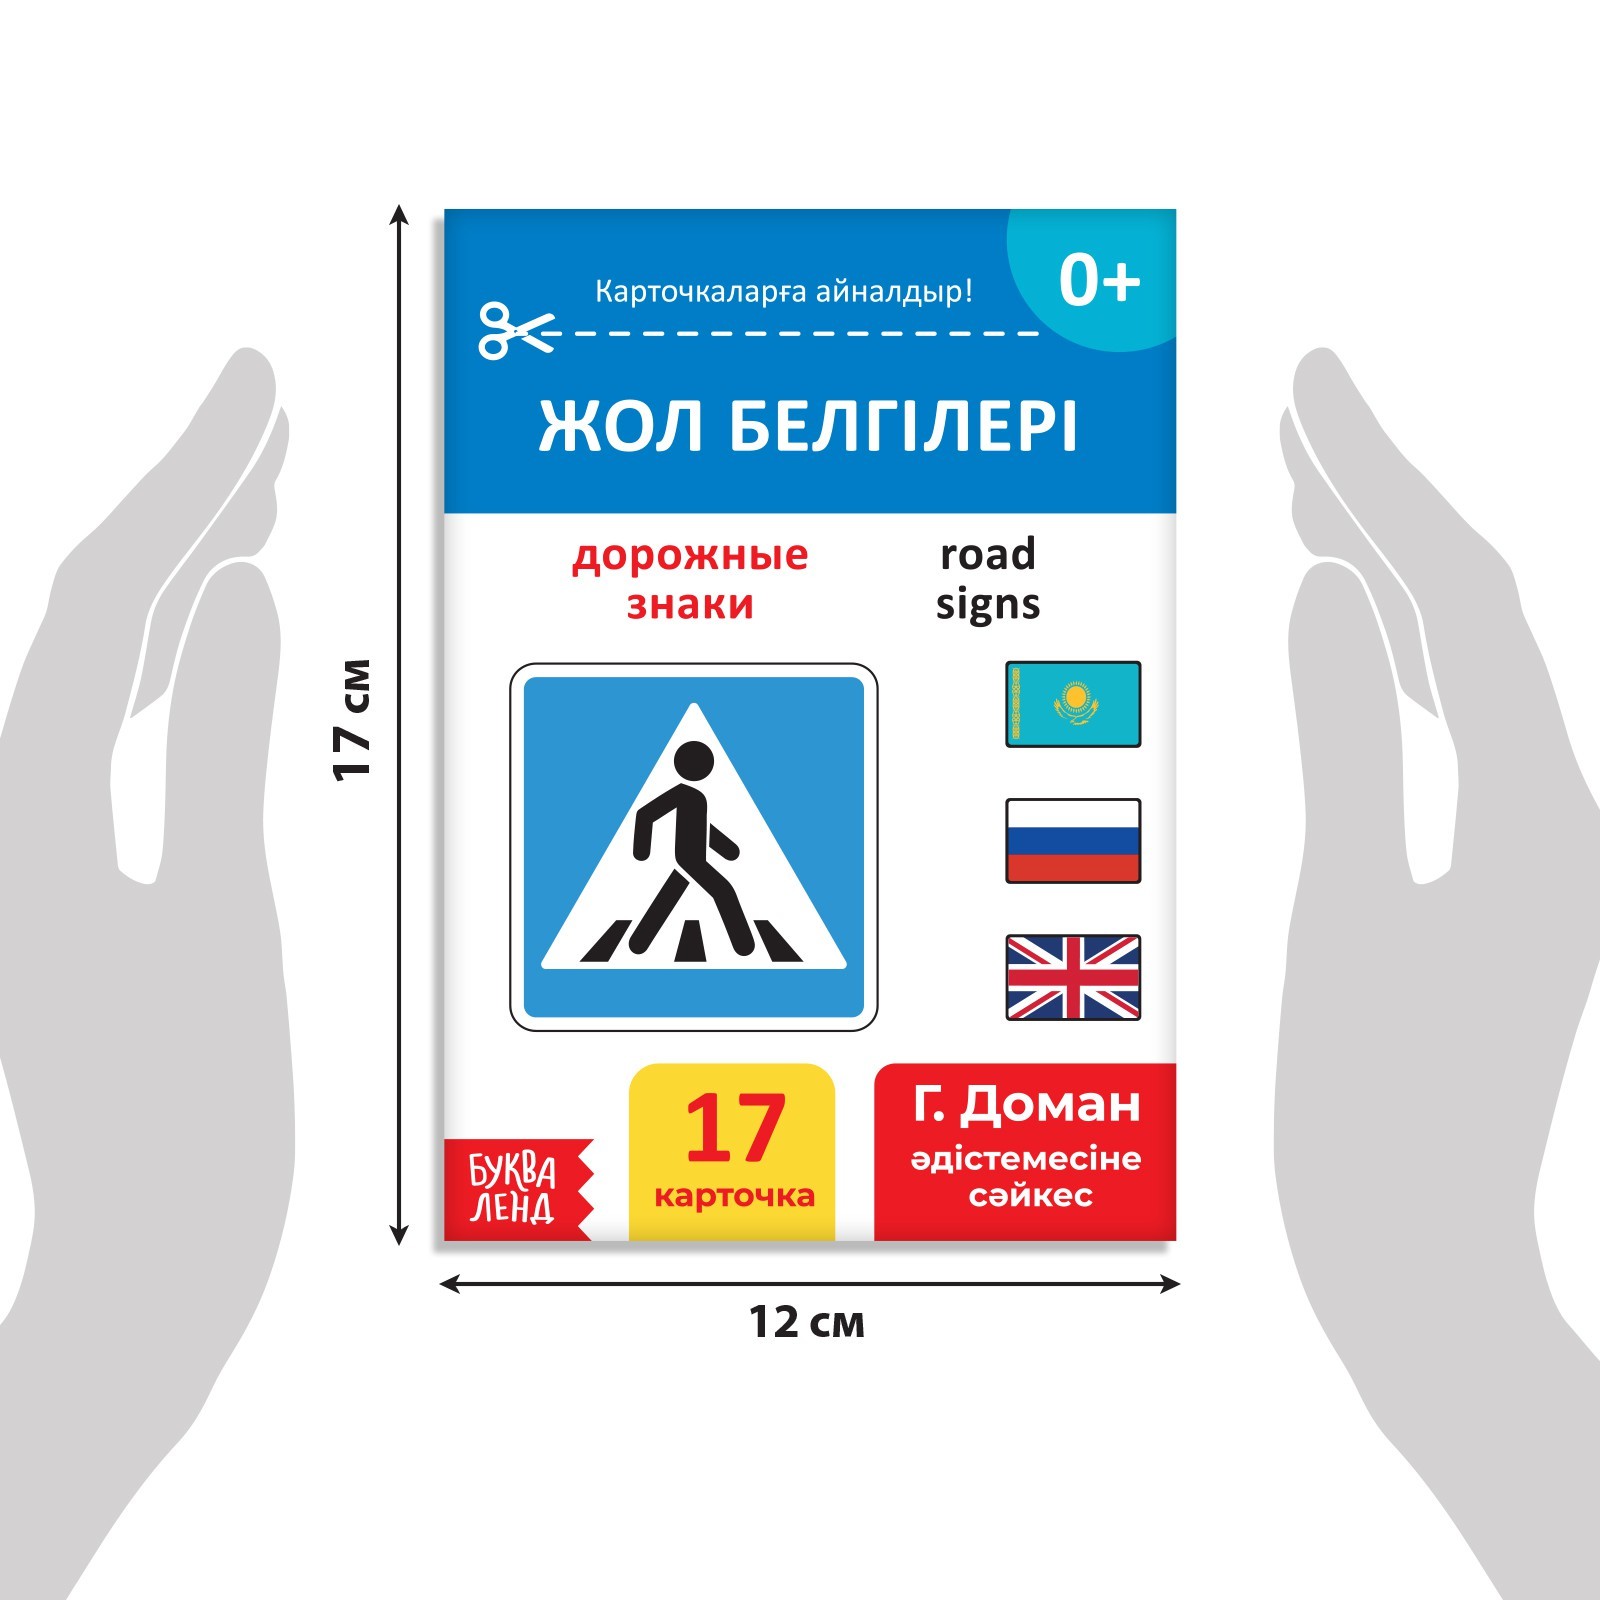 Книга по методике Г. Домана Дорожные знаки, на казахском языке 9828792 (Вид 2)